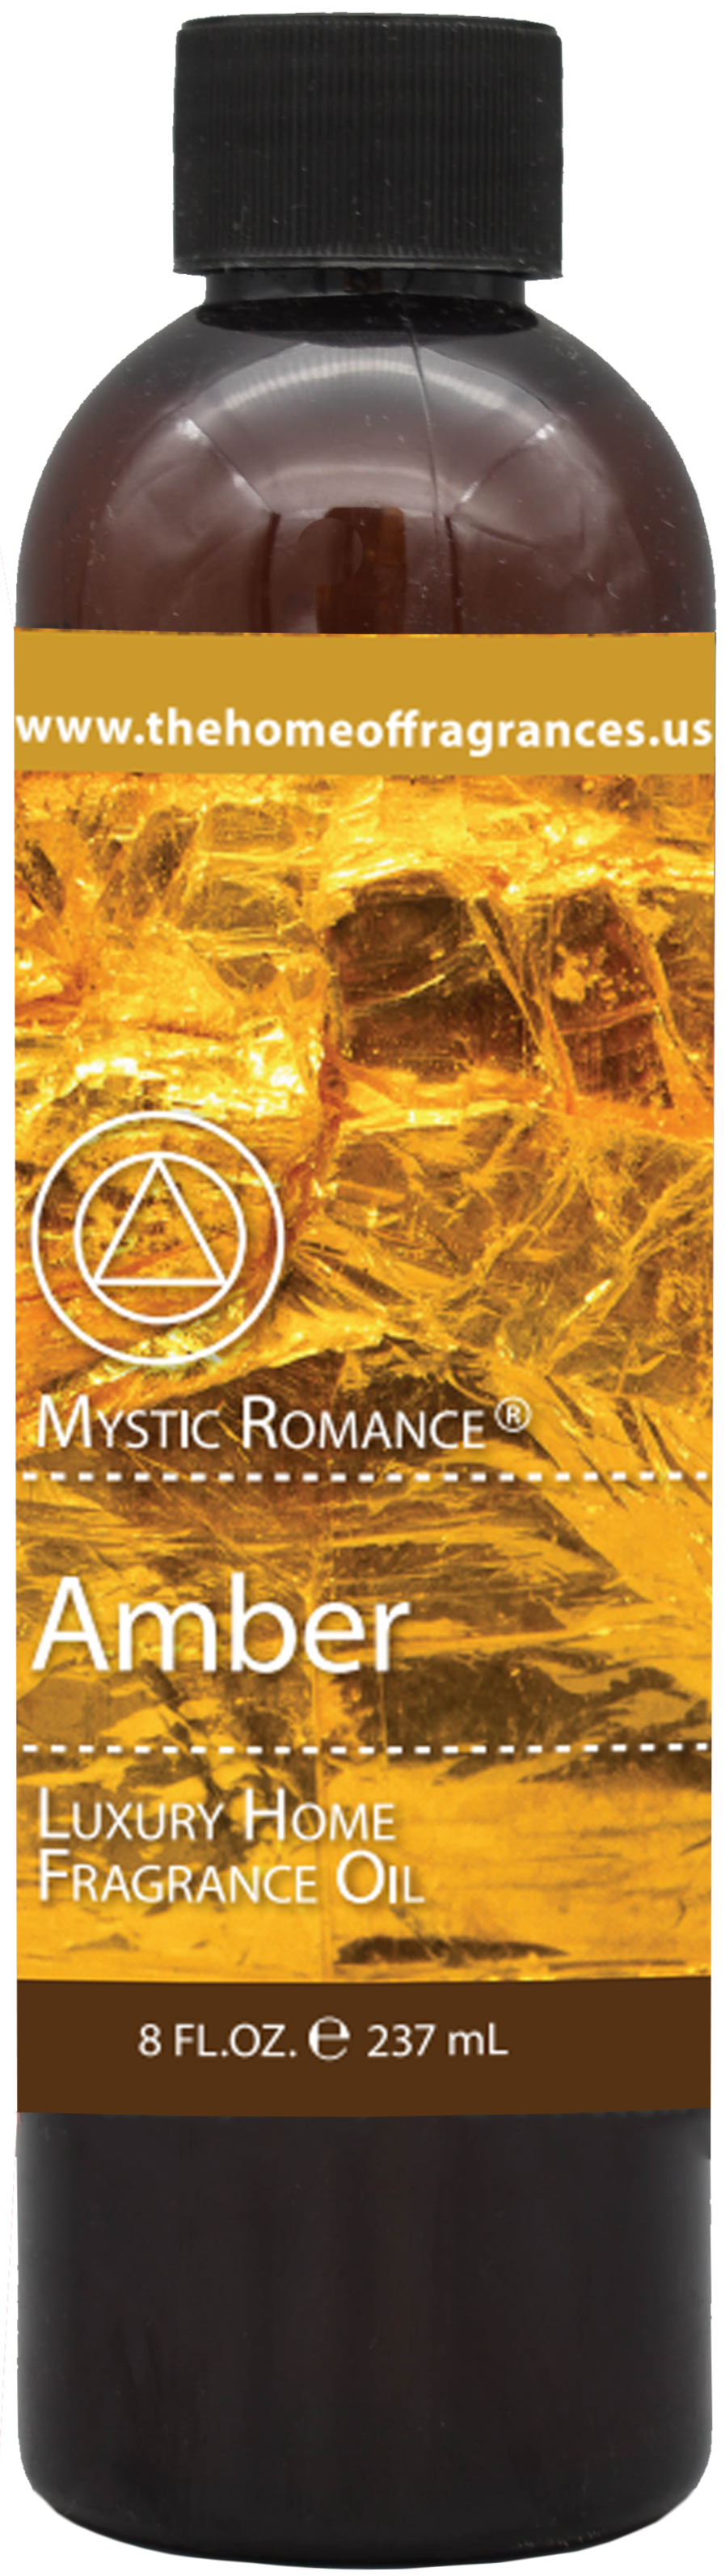 Bergamot Amber Aroma Oil, Amber fragrance oil Davie FL